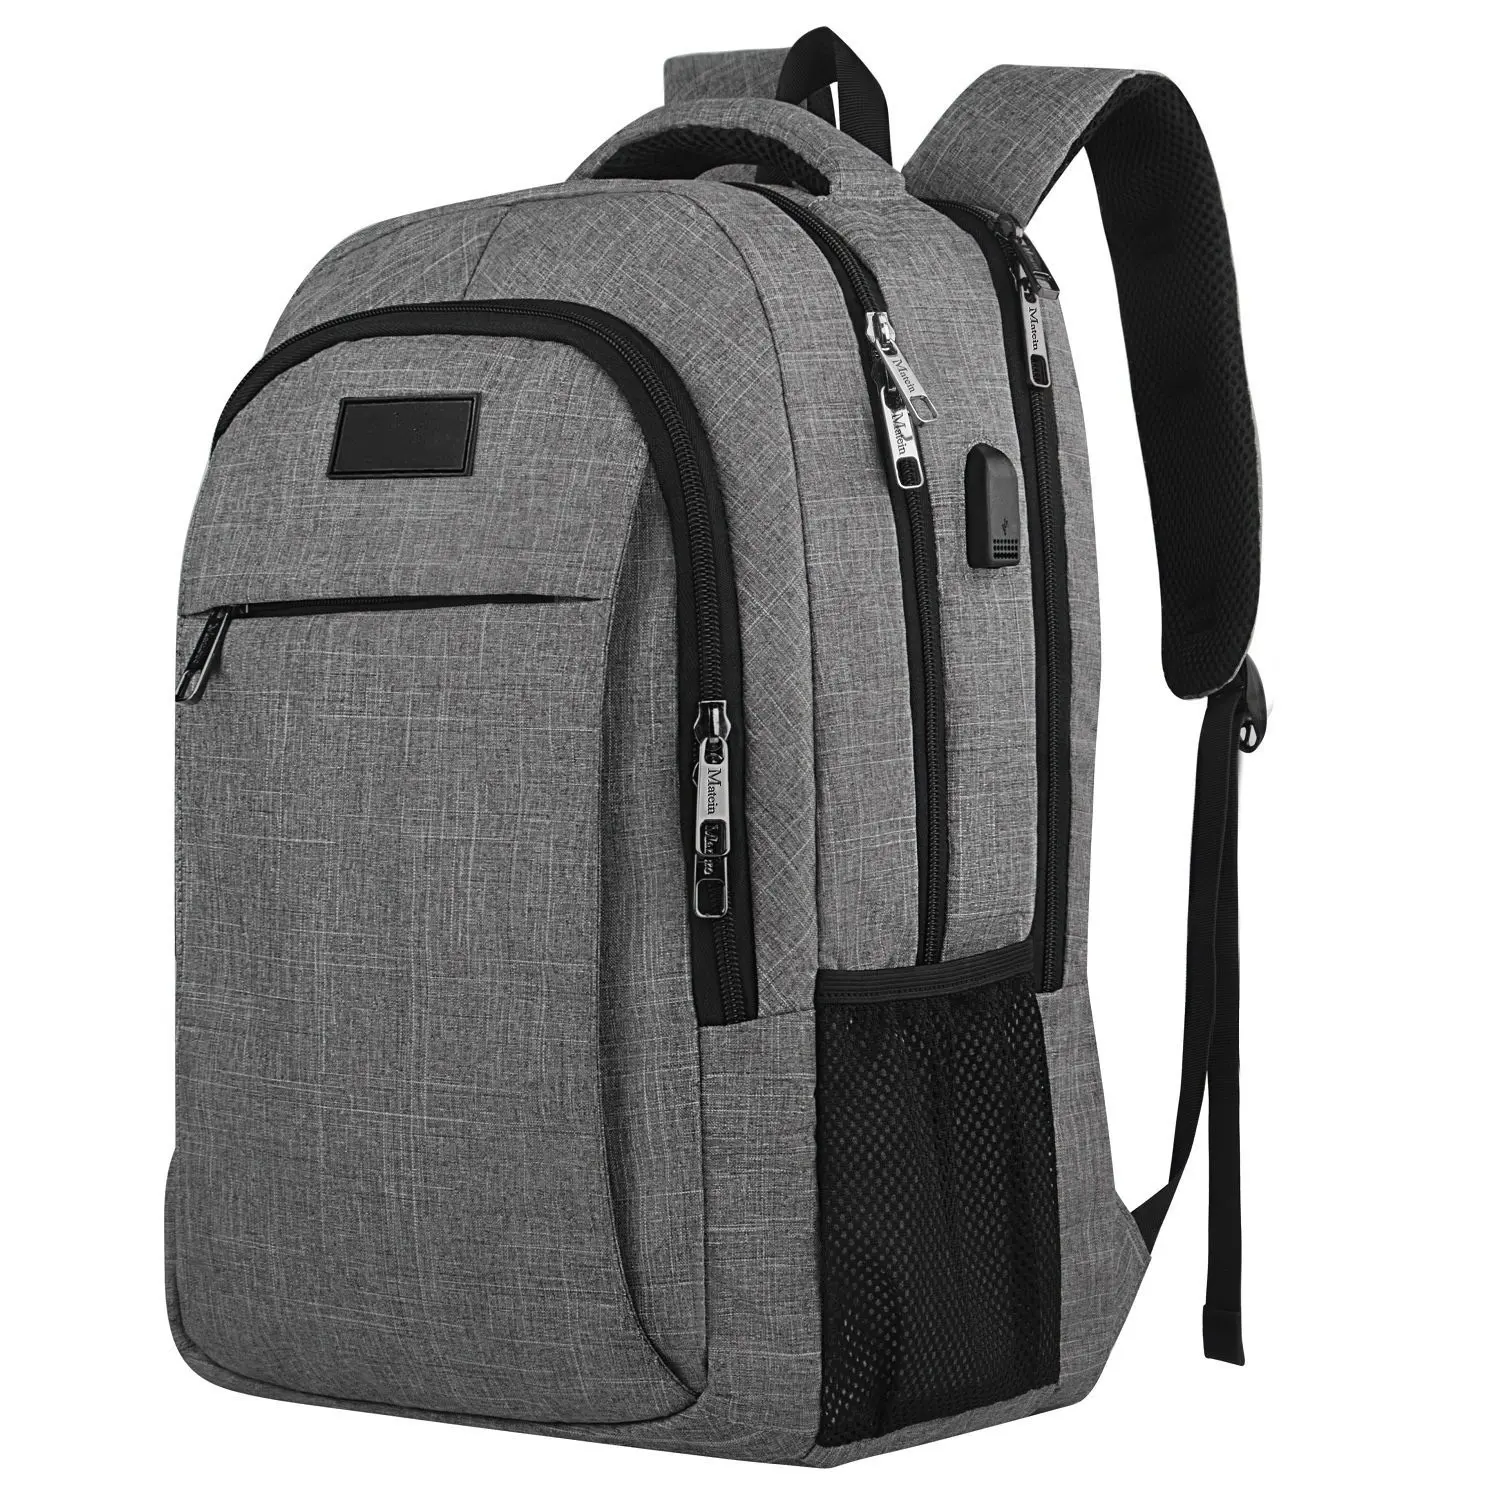 Coolest backpacks 2020